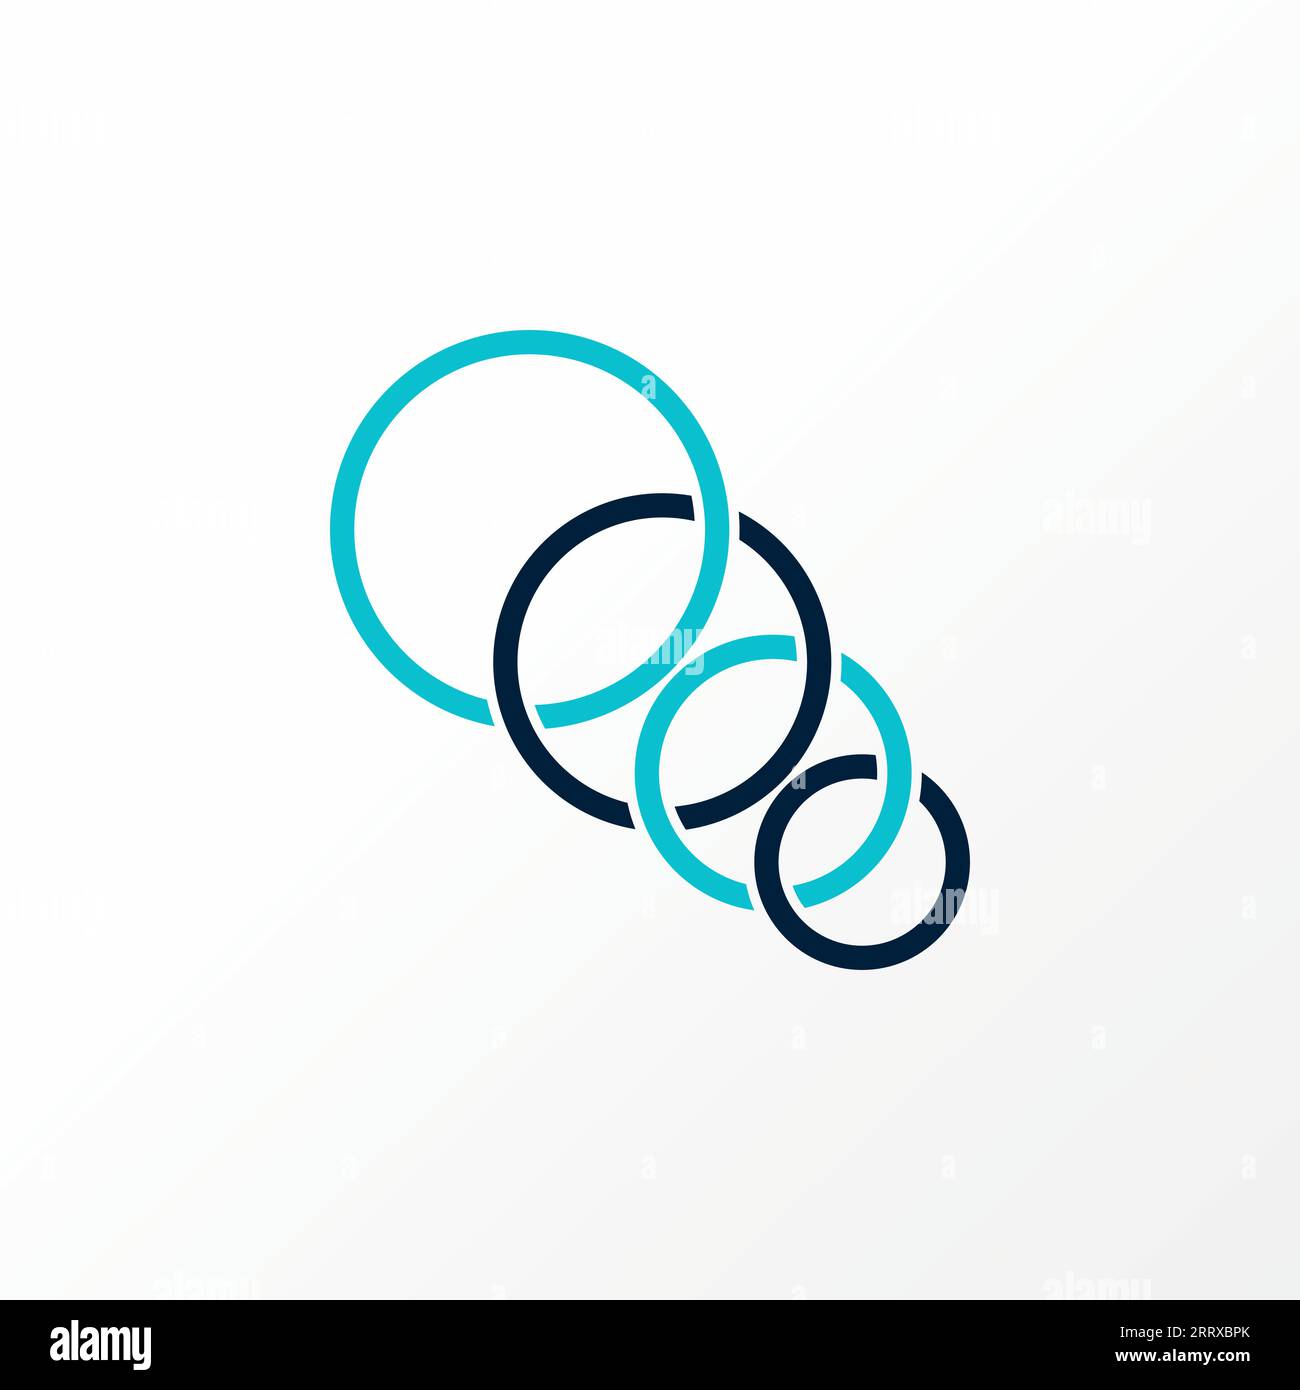 Logo design grafico astratto creativo simbolo vettoriale premium 4 cerchi su Connected piccolo e grande relativo al torneo olimpico di simbolo sportivo Illustrazione Vettoriale